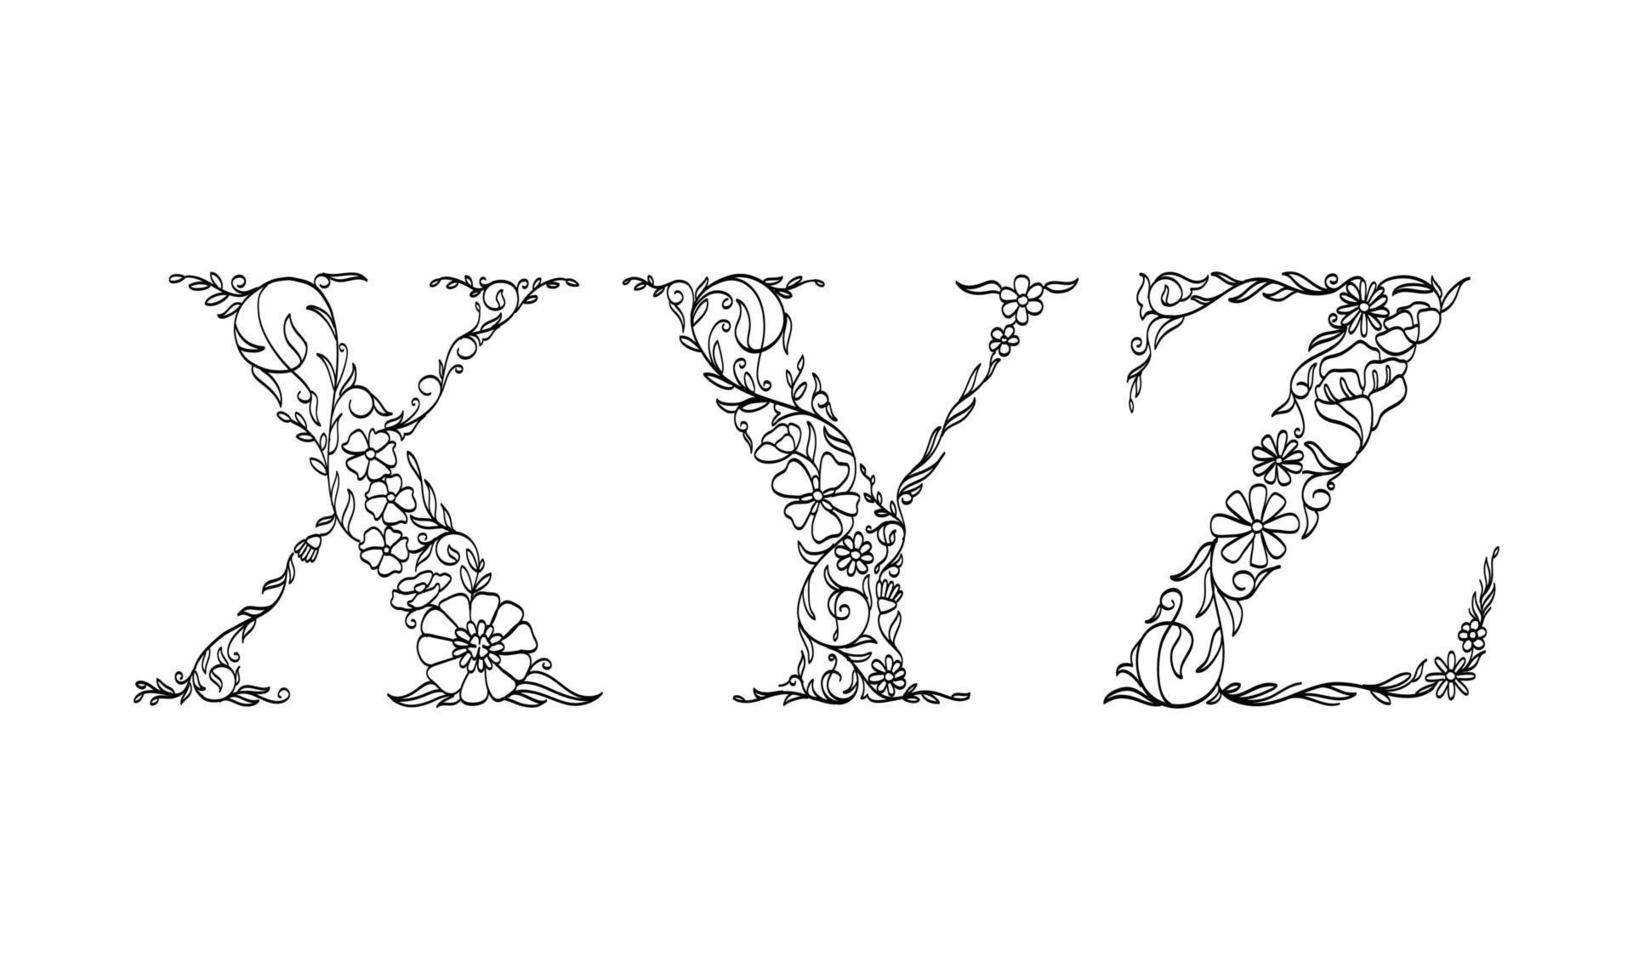 Blumenillustrationsalphabet x, y, z, Vektorgrafik-Schriftart von Blumen- und Blattpflanzen kreative handgezeichnete Strichzeichnungen für abstrakte und natürliche Naturstil-Looks in einzigartiger monochromer Designdekoration vektor